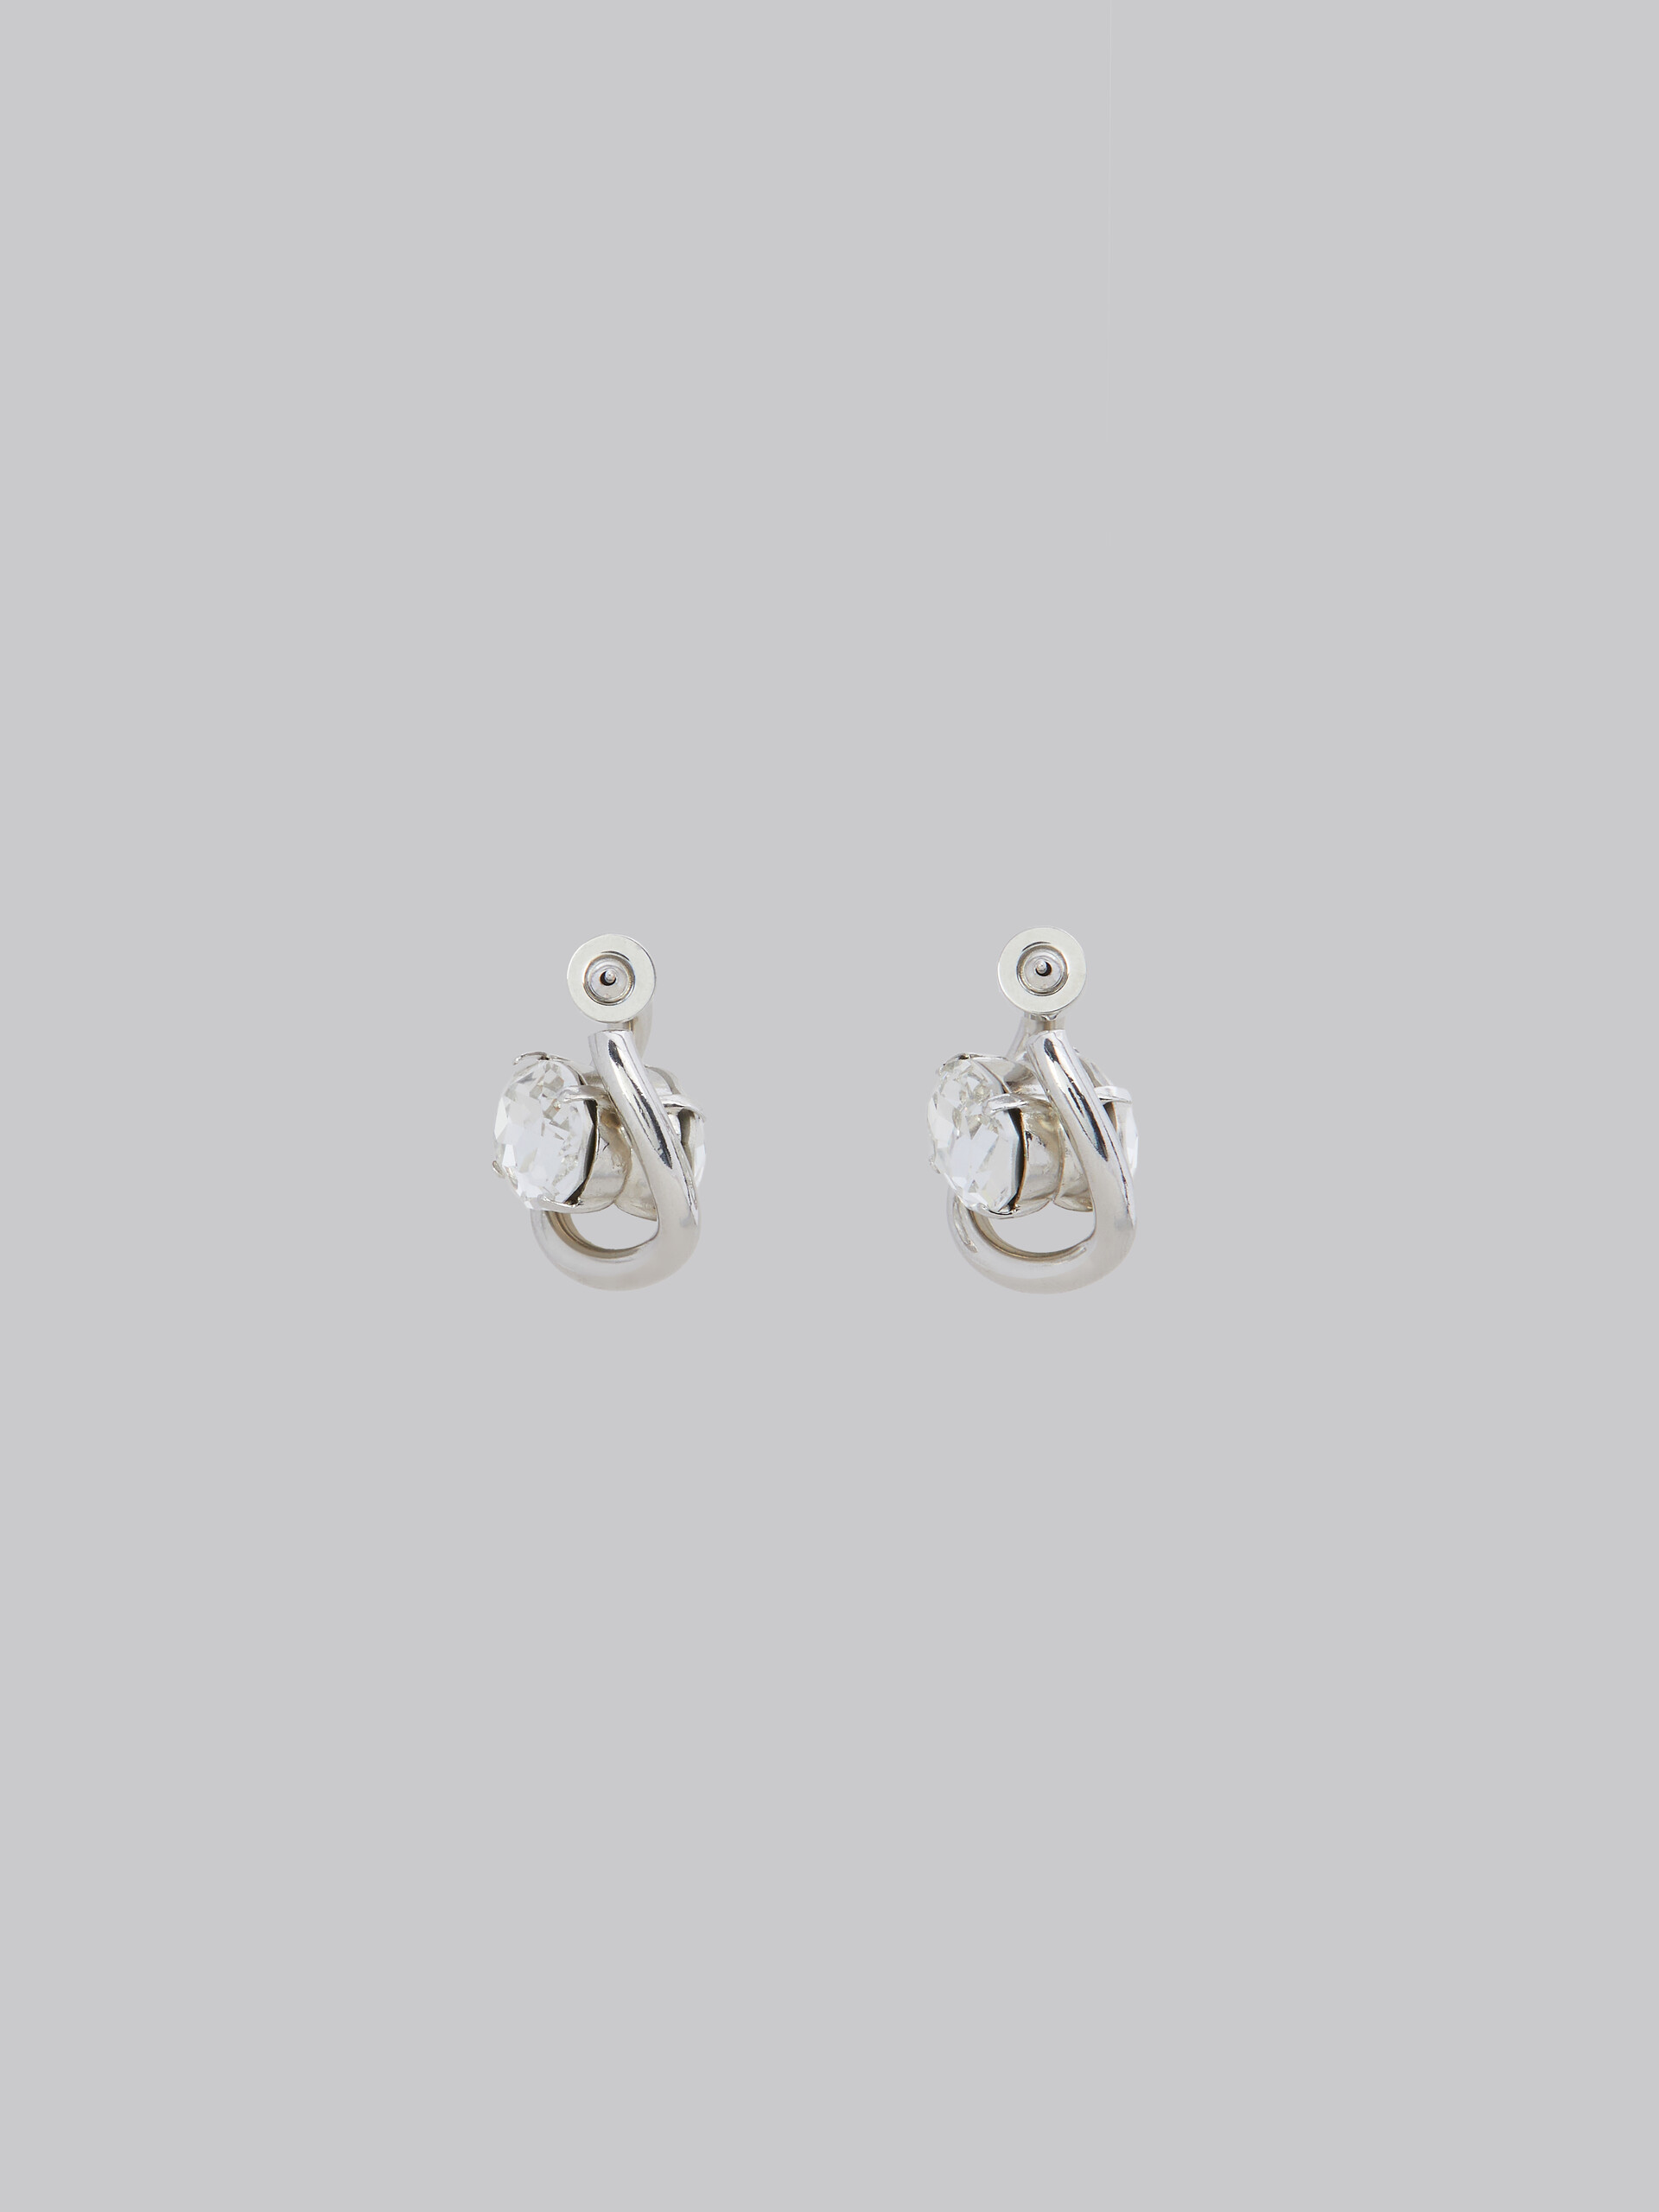 Twisted hoop earrings with rhinestone details - Earrings - Image 3